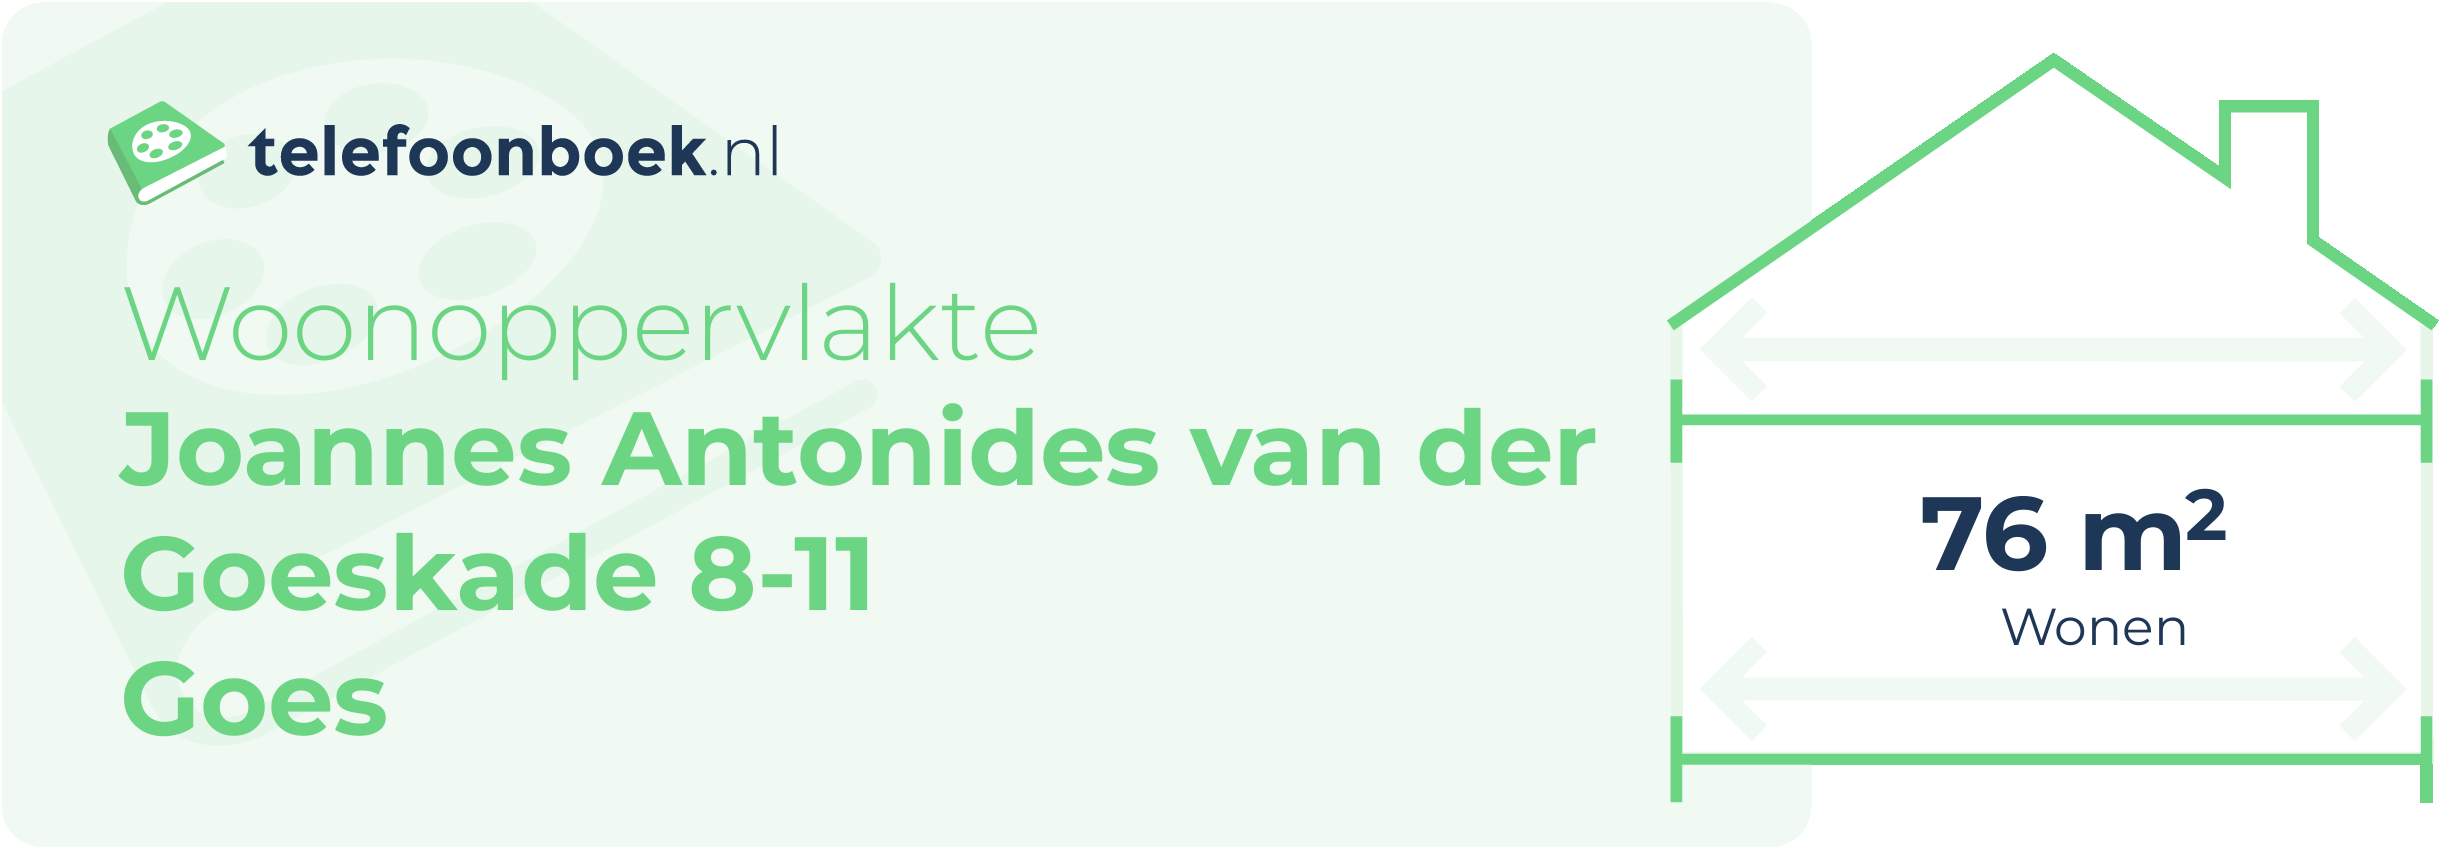 Woonoppervlakte Joannes Antonides Van Der Goeskade 8-11 Goes